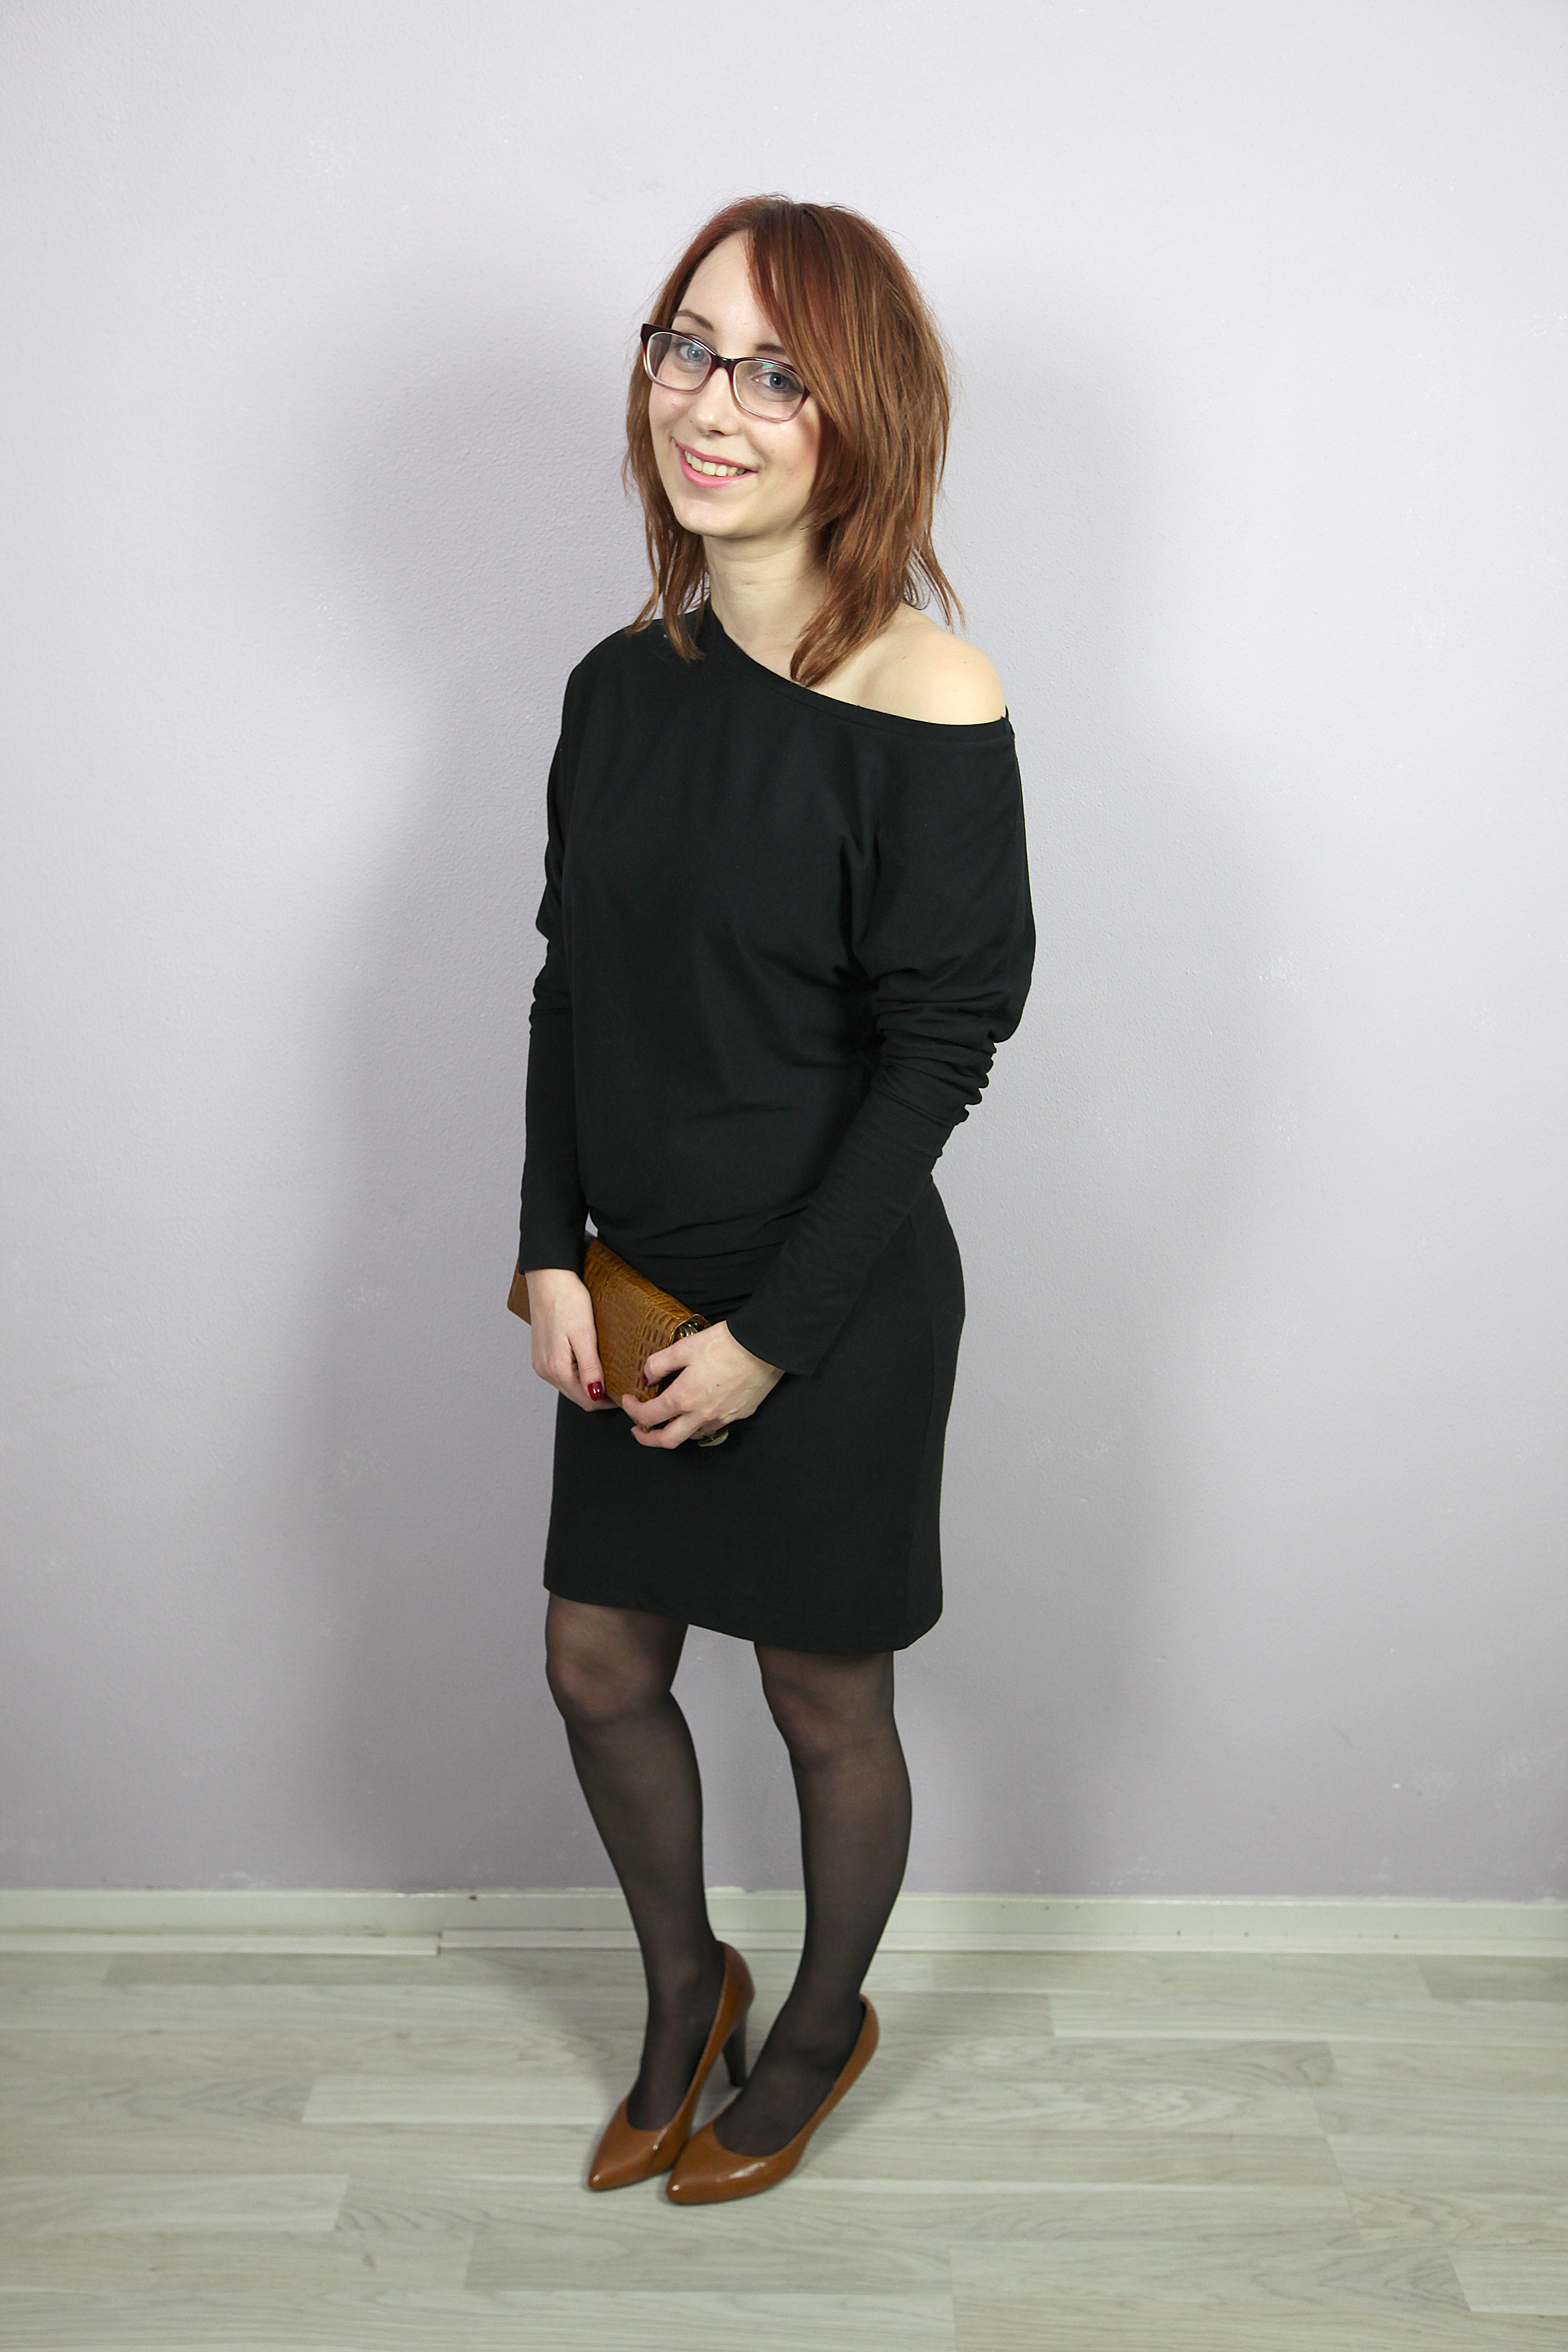 Eenheid Medisch wangedrag auditie Outfit: De perfecte zwarte jurk is van bamboe - vintageandbeauty.com